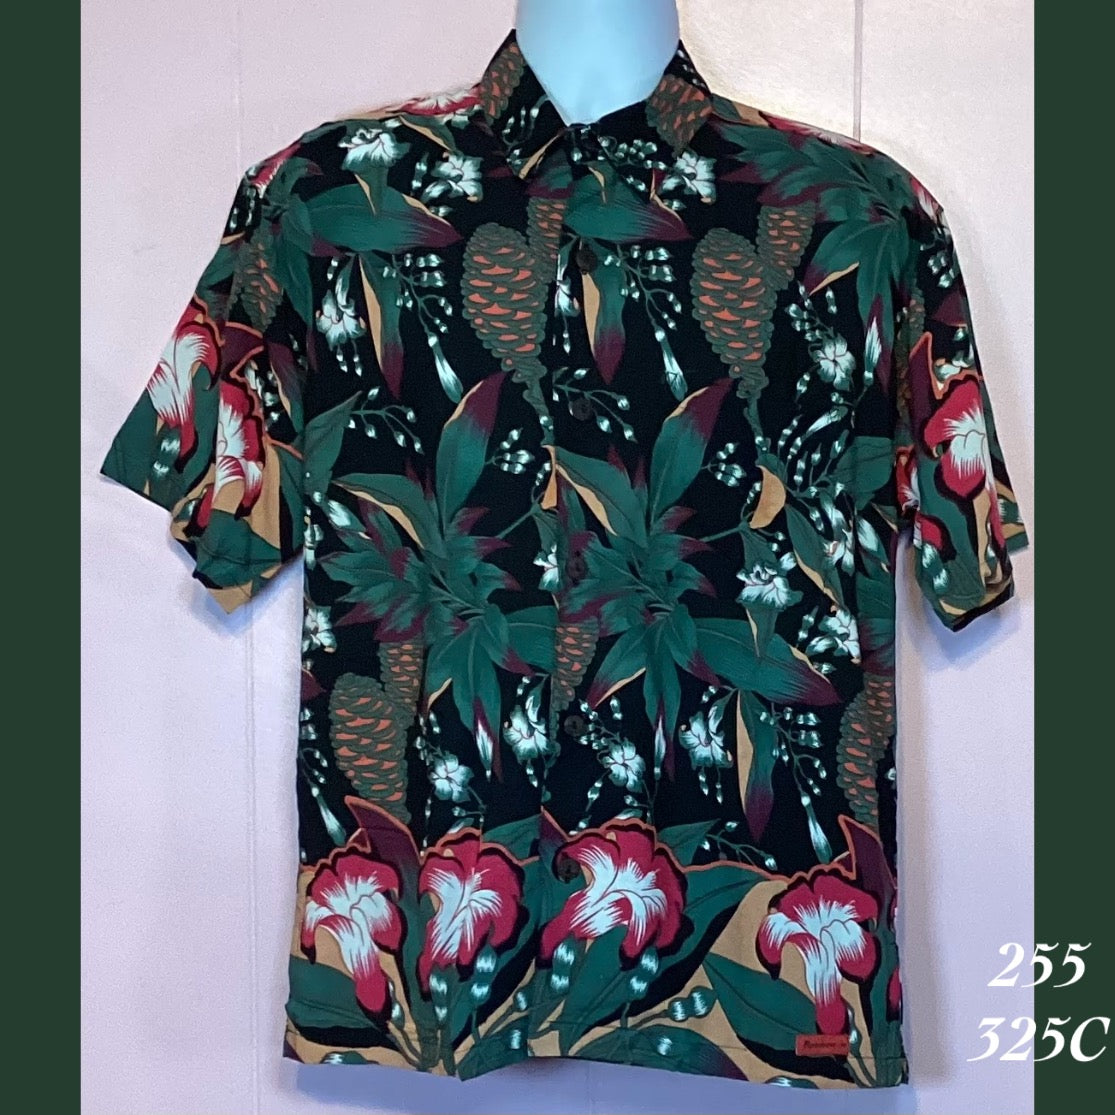 255 - 325C , Men's Aloha shirt